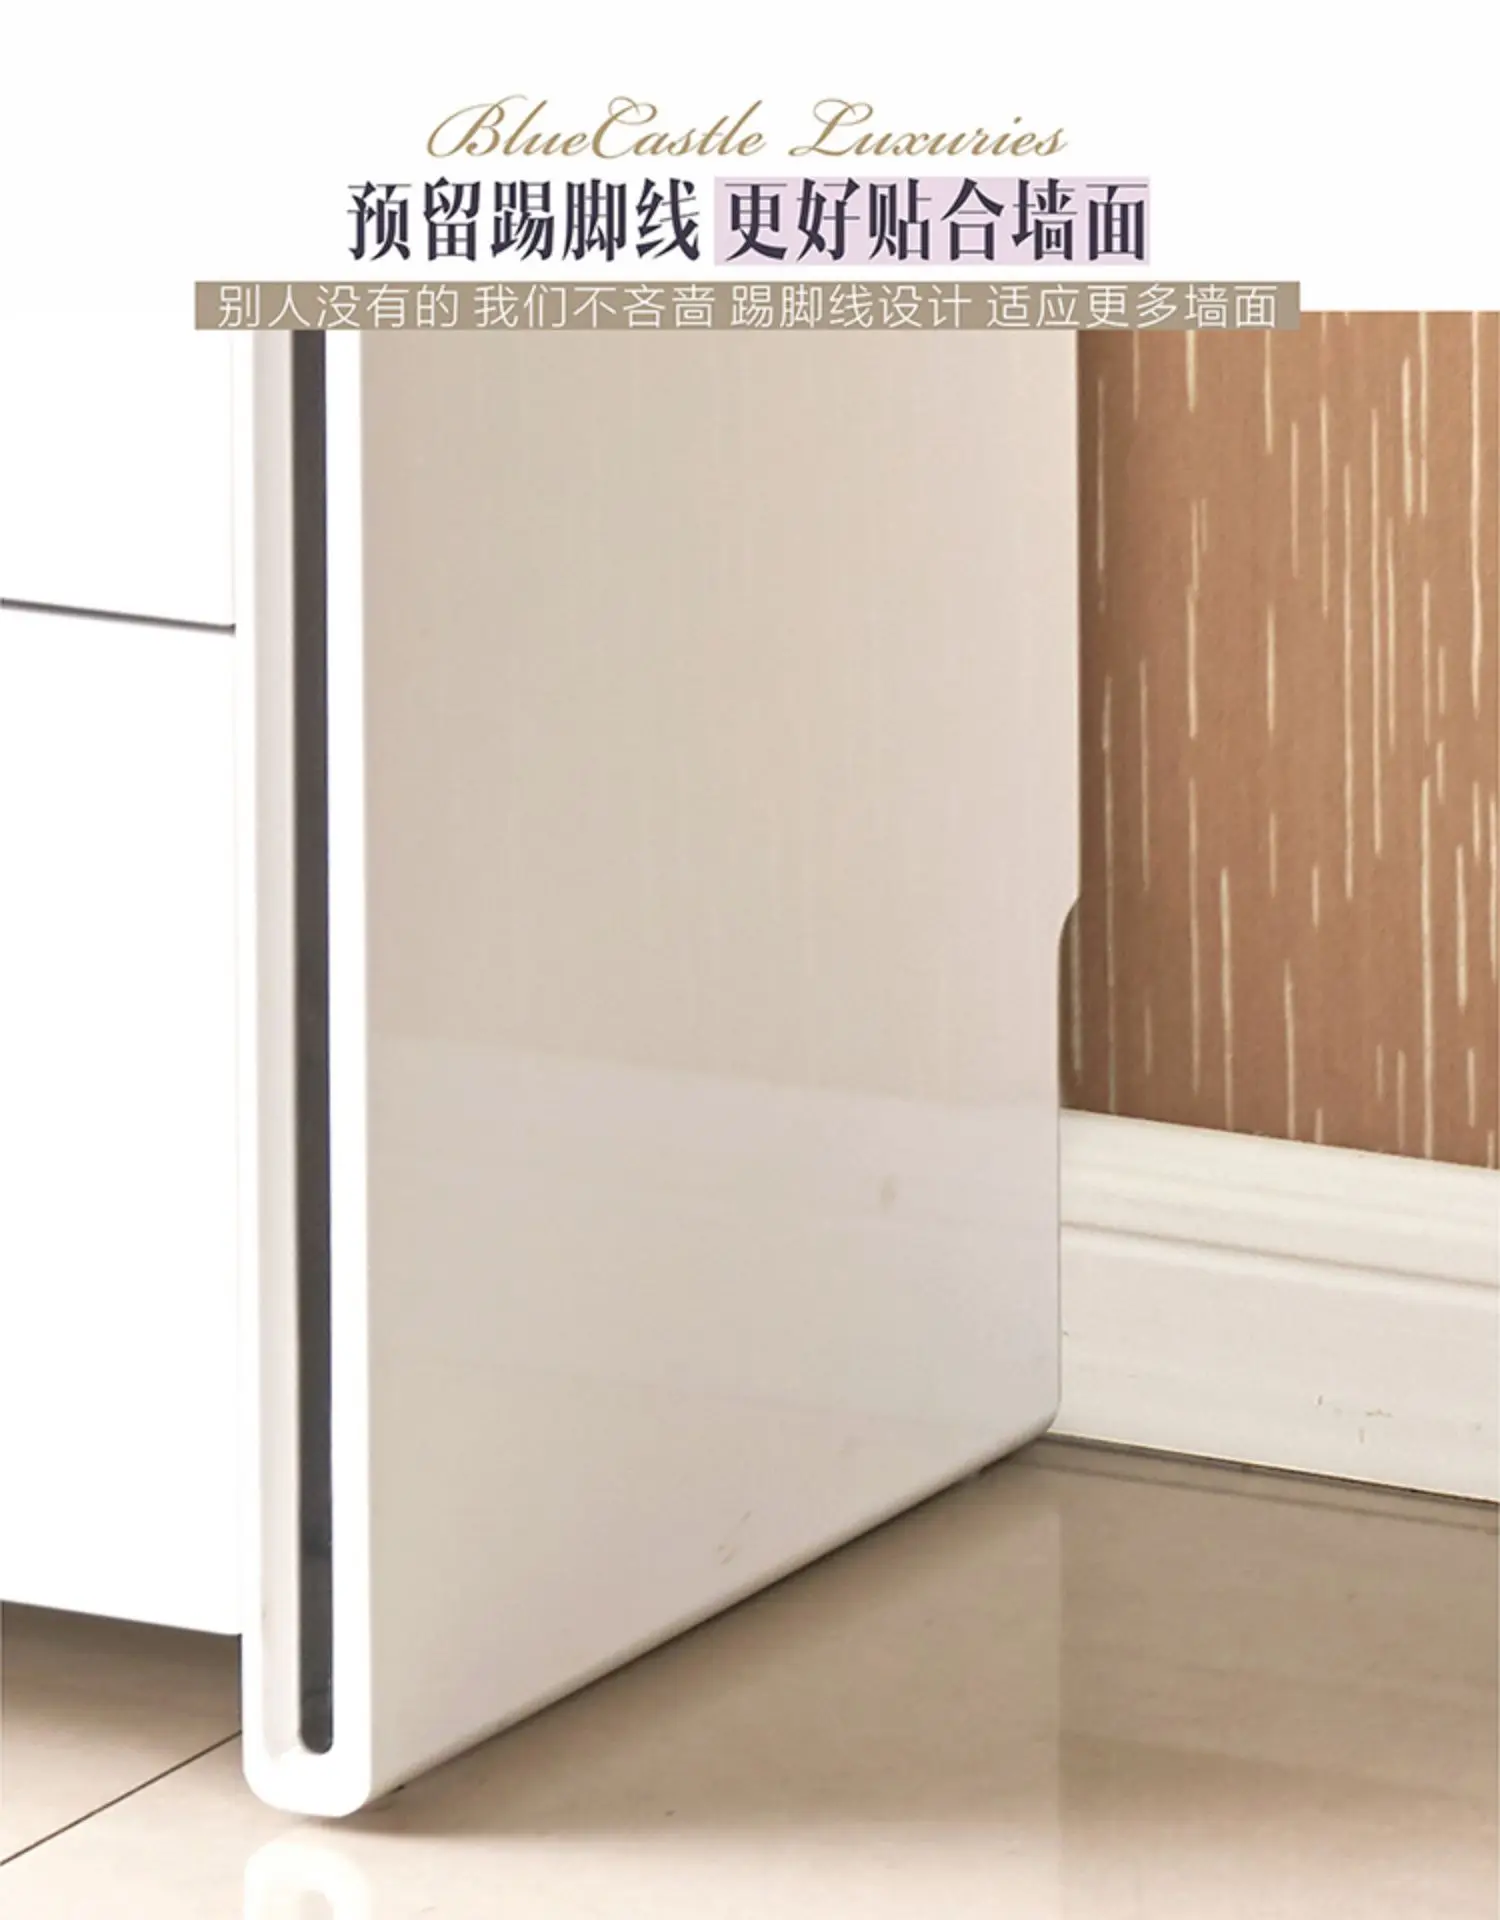 Луи Мода шкаф-ведро белая Массивная древесина переплет спальня приемный Шкаф простой современный шкаф для хранения экономичный пять-шкаф